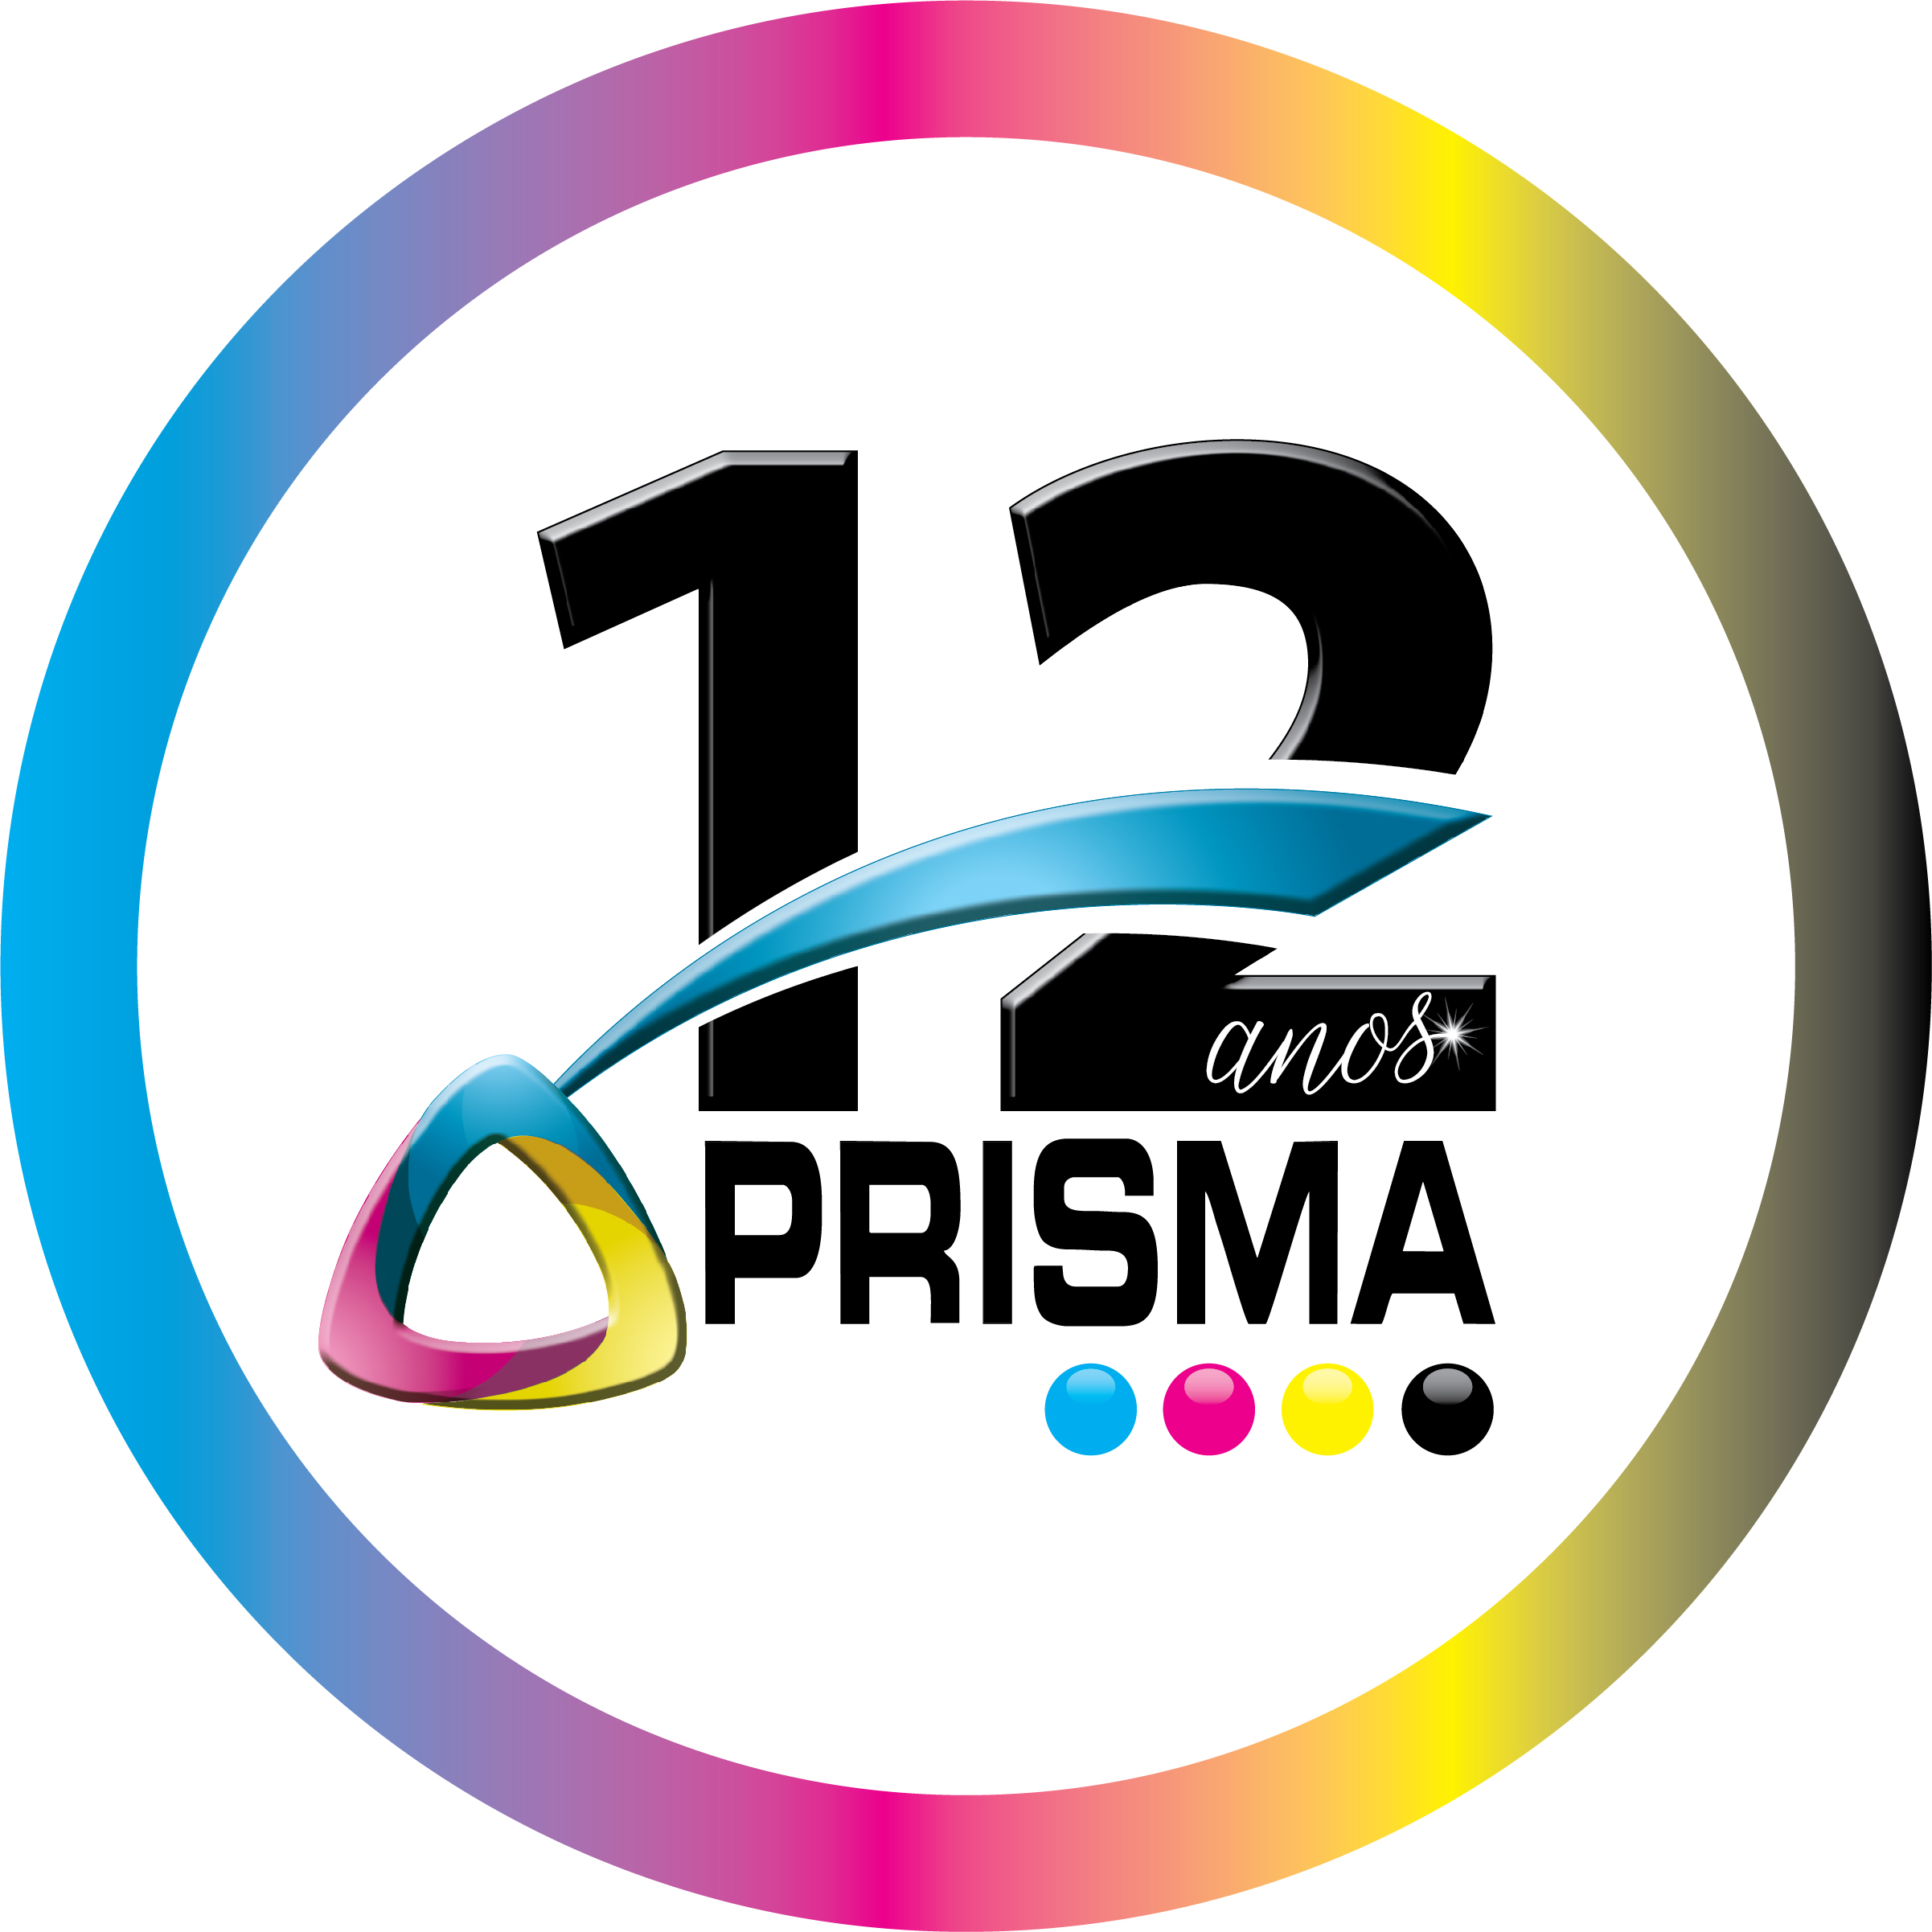 PRISMA COMPOSIÇÃO DE CLICHÊS E MATRIZES LTDA